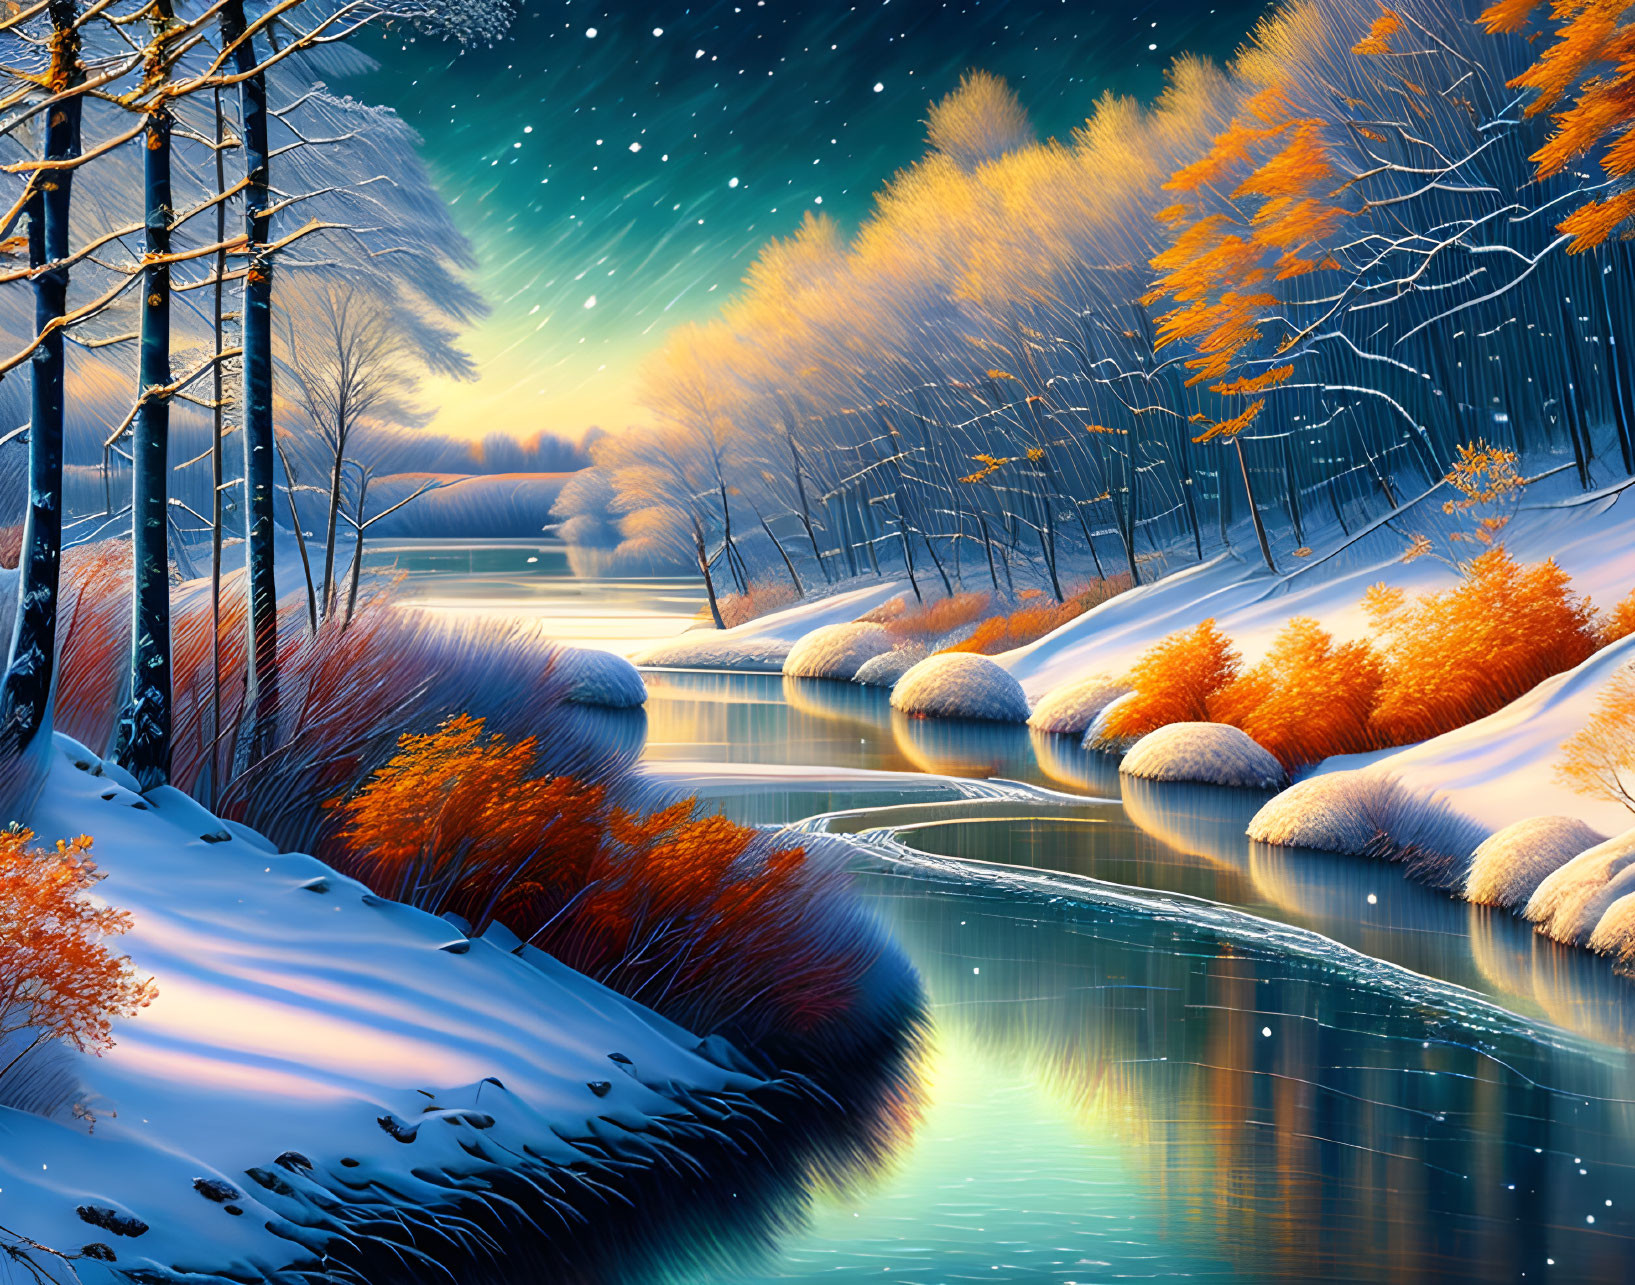 Winter Dusk Scene: River, Snow, Trees, Starry Sky